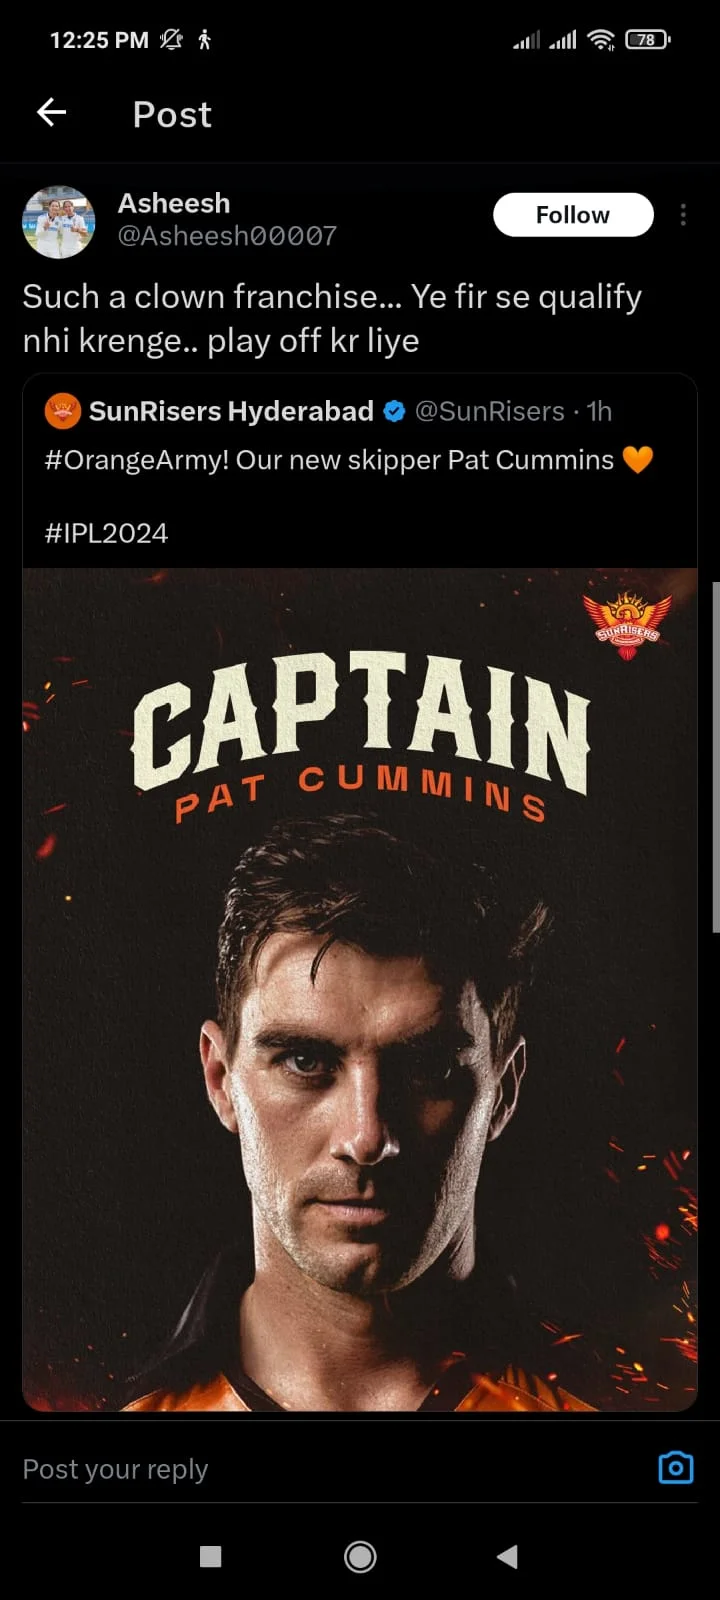 Pat Cummins